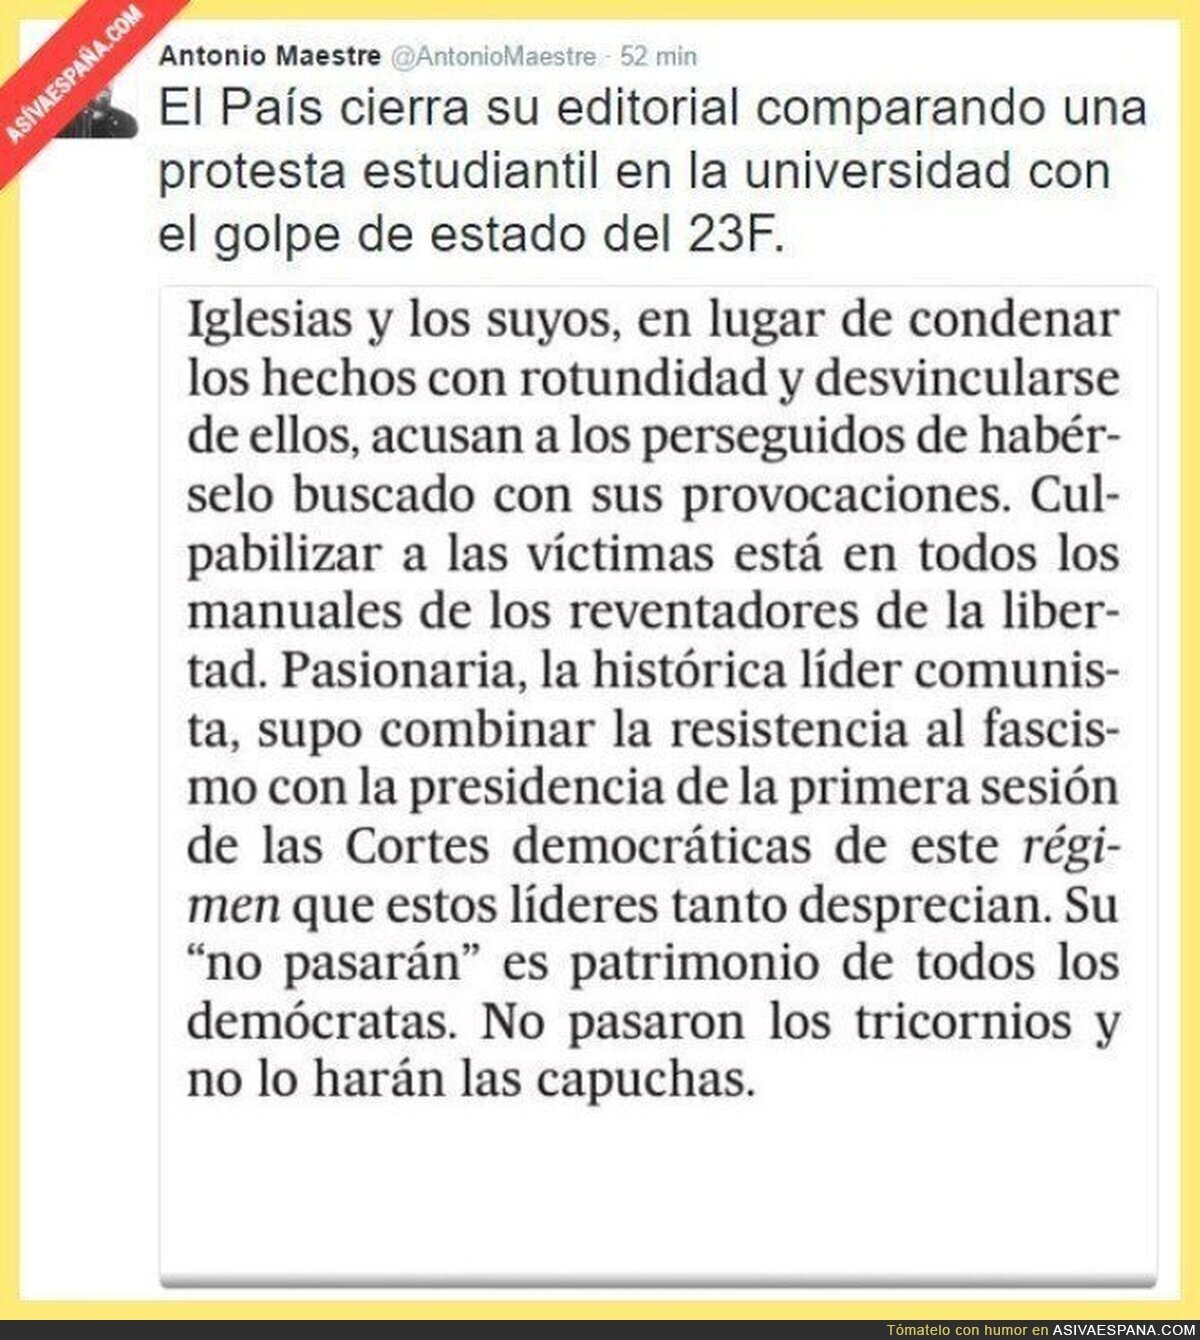 "El País" ha perdido el juicio. Compara una protesta universitaria con el 23F